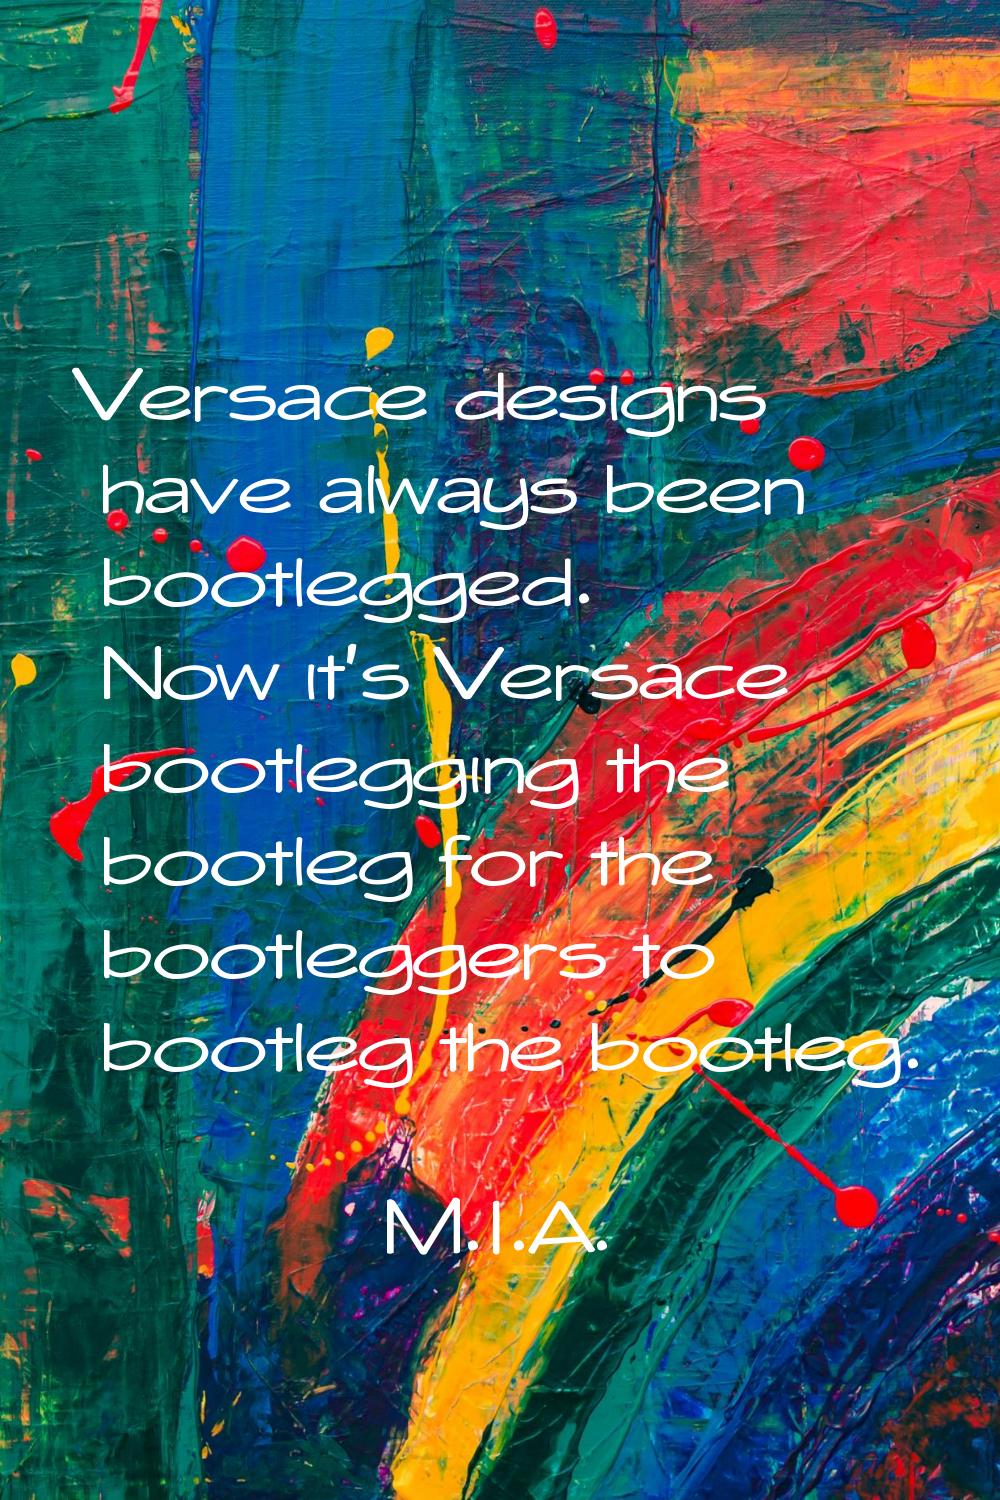 Versace designs have always been bootlegged. Now it's Versace bootlegging the bootleg for the bootl